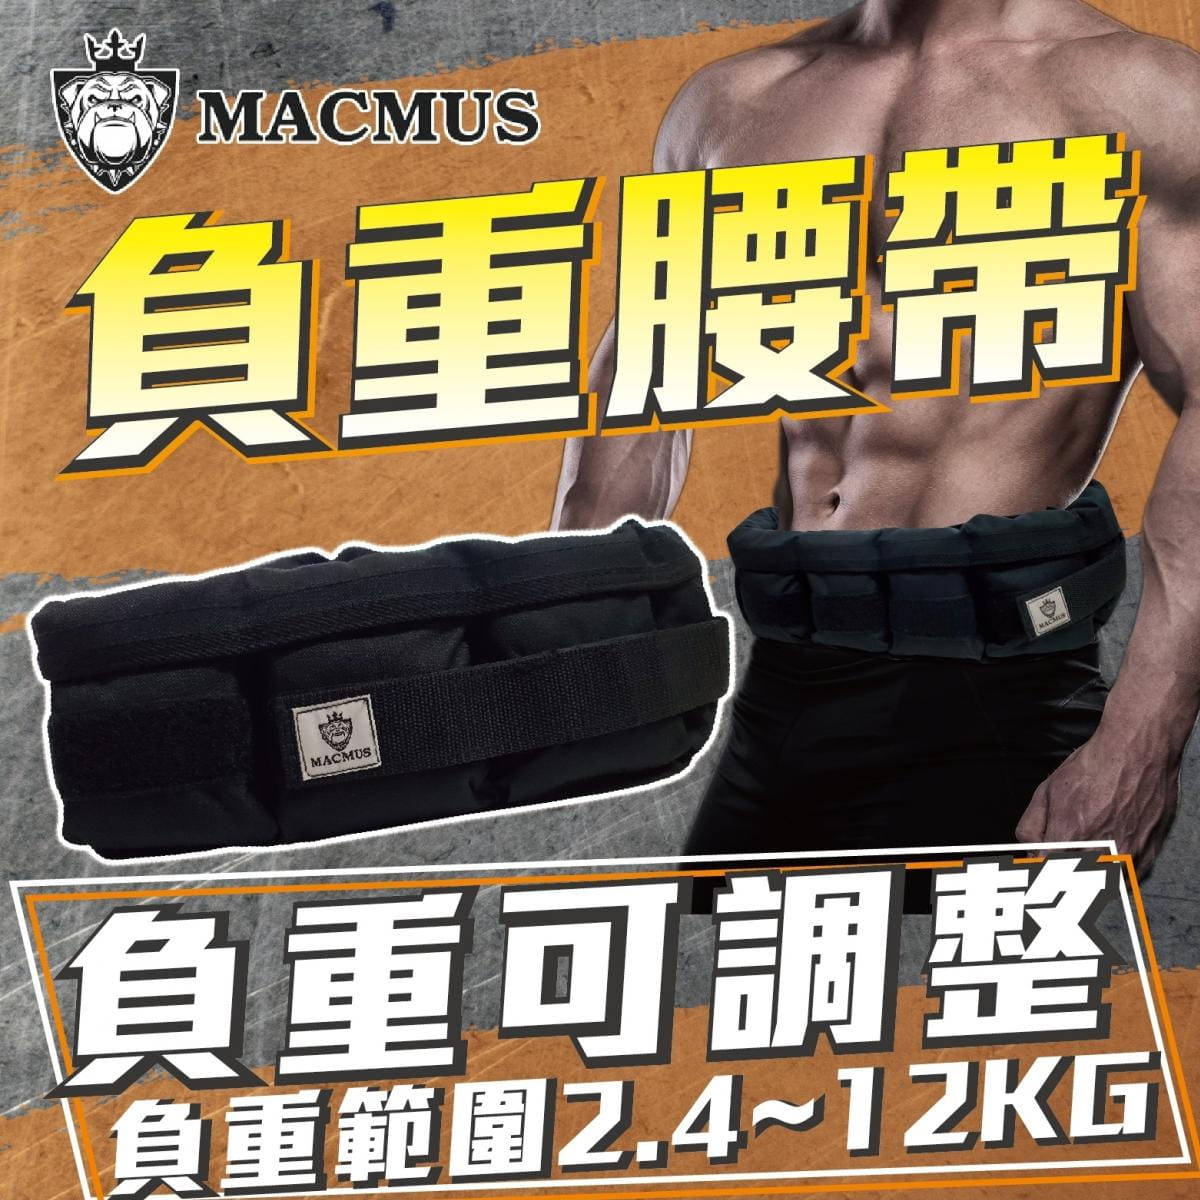 【MACMUS】9.2公斤負重腰帶｜8格式可調整重訓腰帶｜強化核心肌群鍛鍊腰部肌肉 0